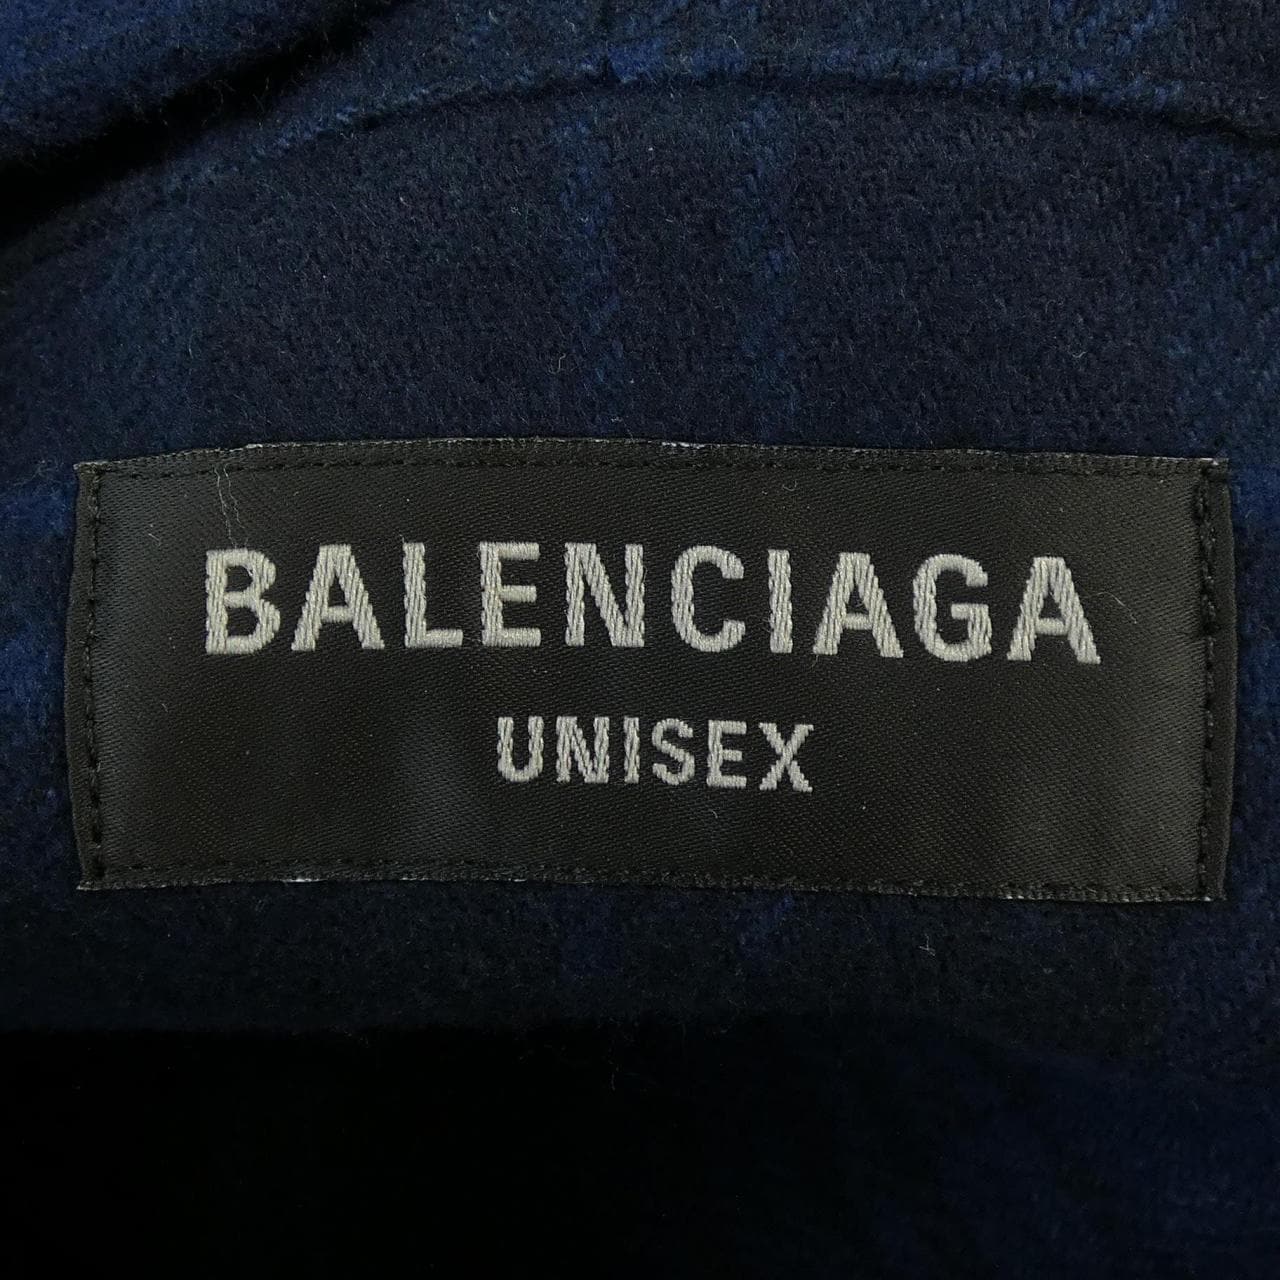 BALENCIAGA shirt